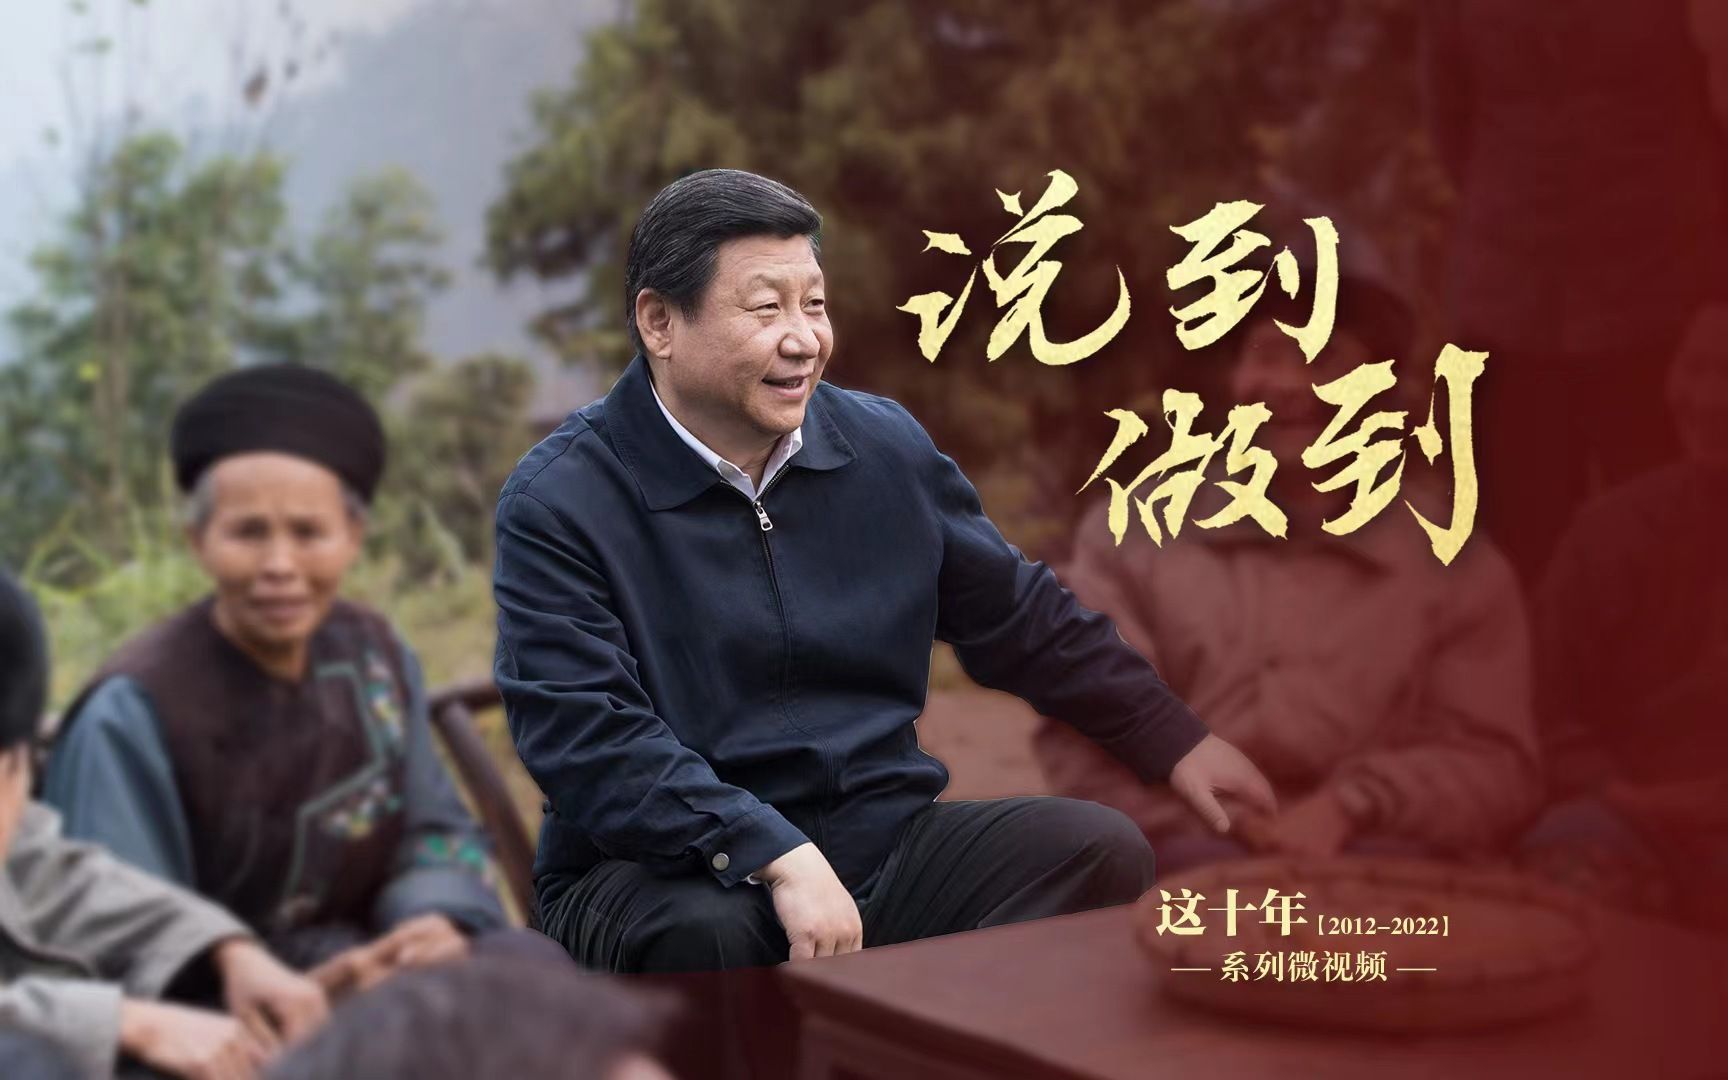 “中国人说话、中国共产党说话、中国共产党的领导说话是算数的”